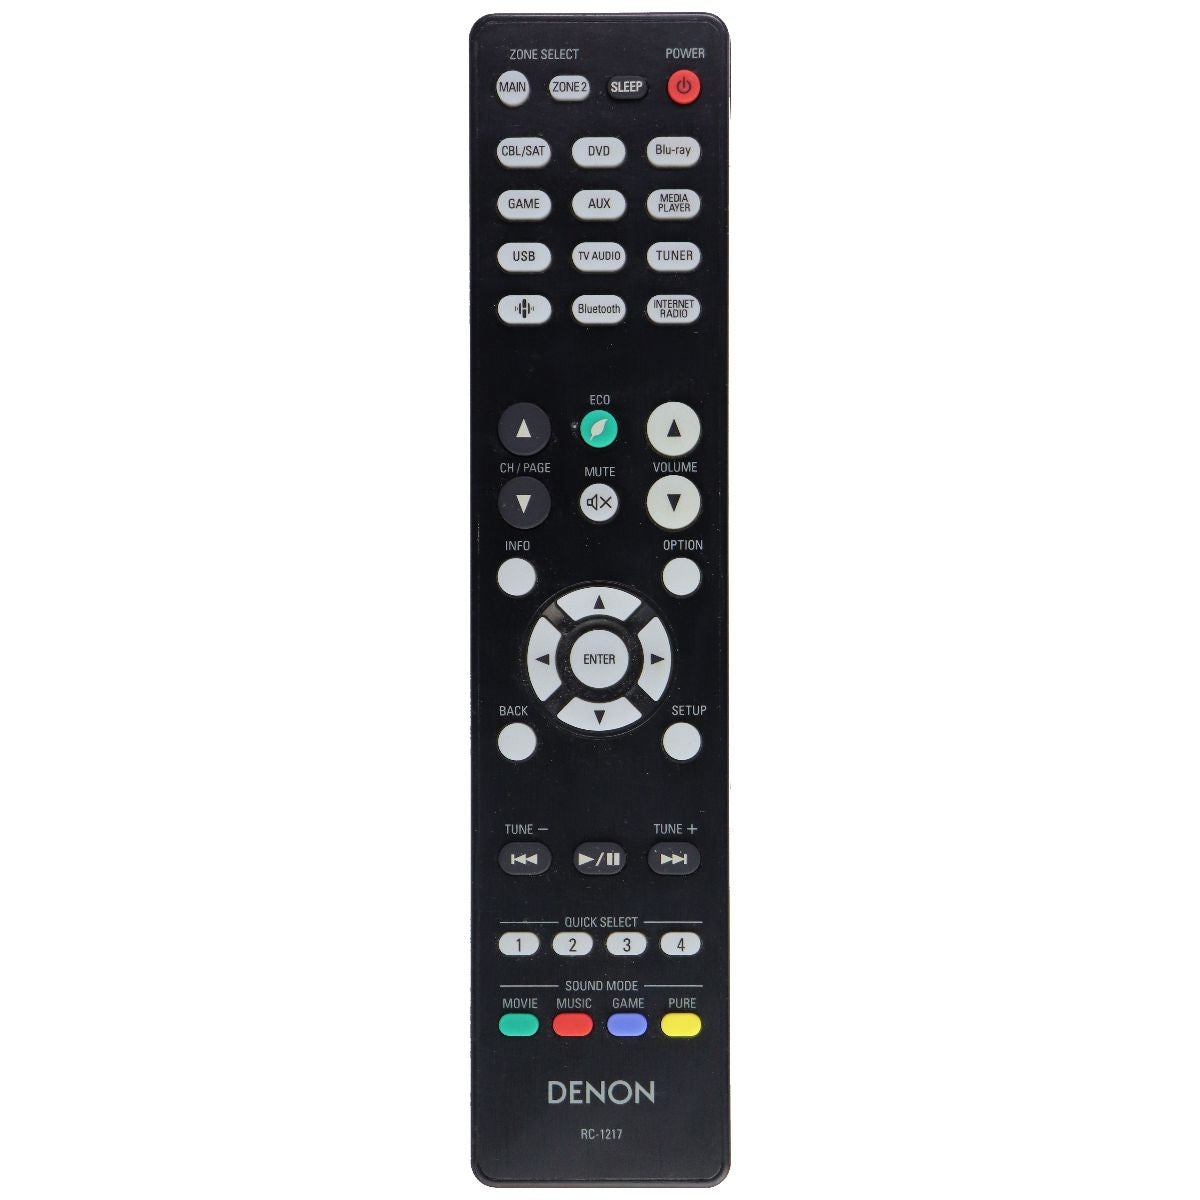 Denon OEM Remote Control (RC-1217) for Select Denon Systems - Black TV, Video & Audio Accessories - Remote Controls Denon    - Simple Cell Bulk Wholesale Pricing - USA Seller